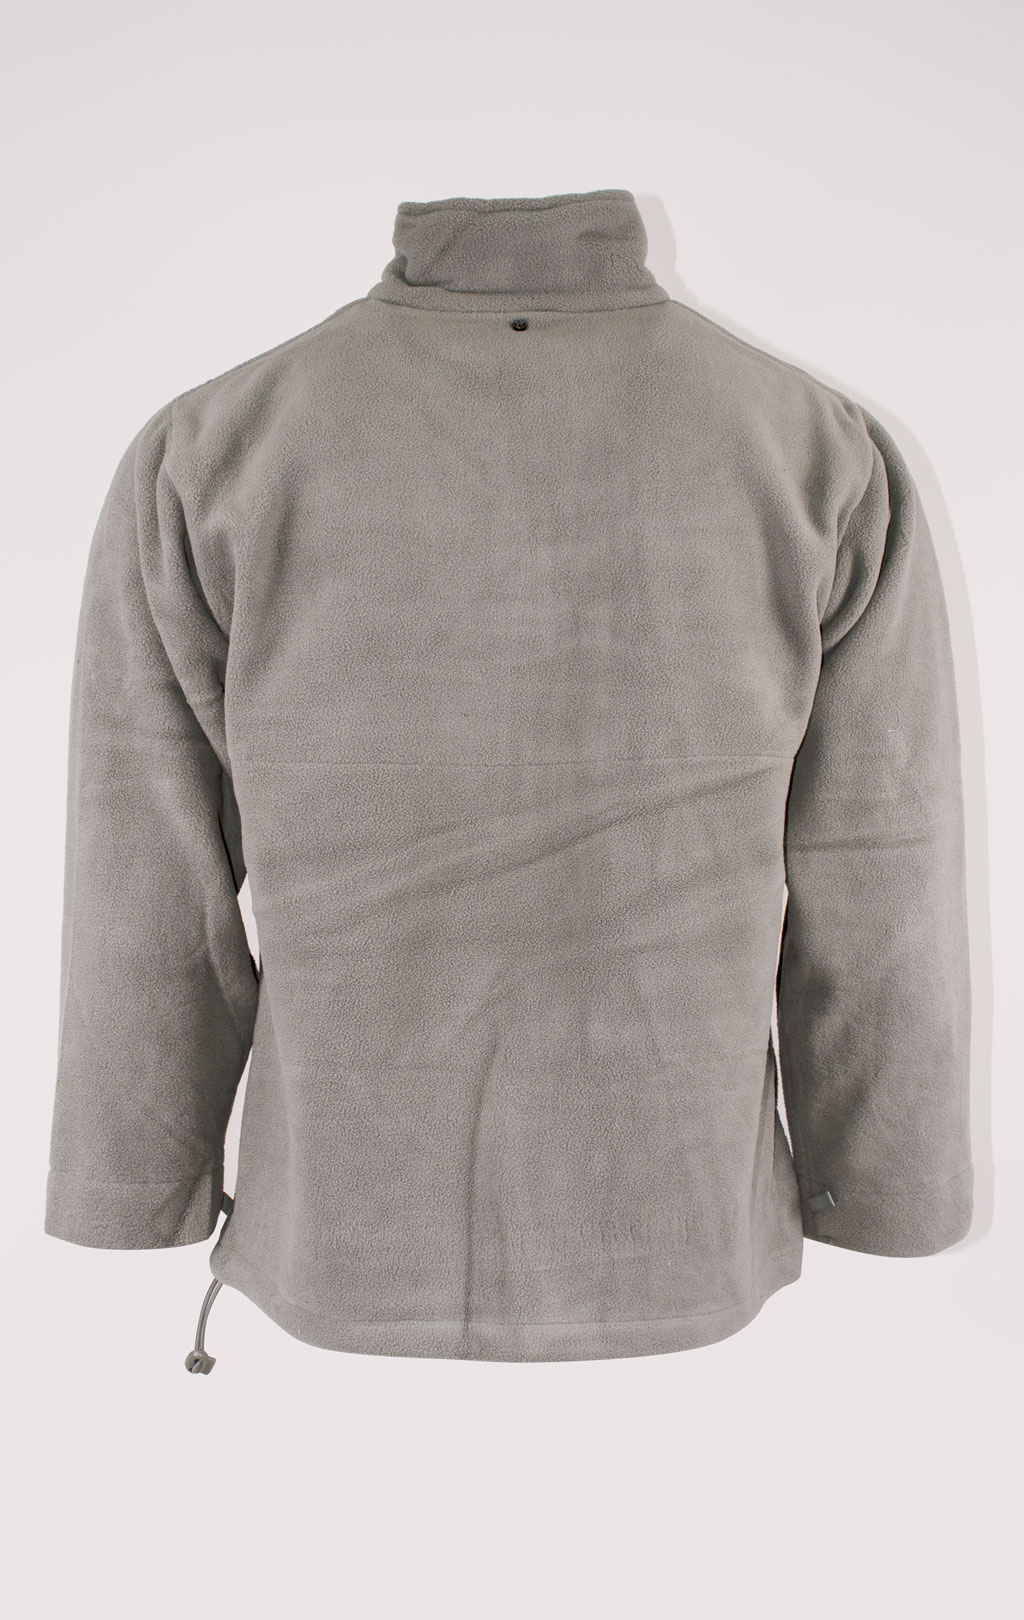 Куртка непромокаемая Tru-Spec/Guardian Spirit мембрана ecwcs с подстёжкой флис acu 